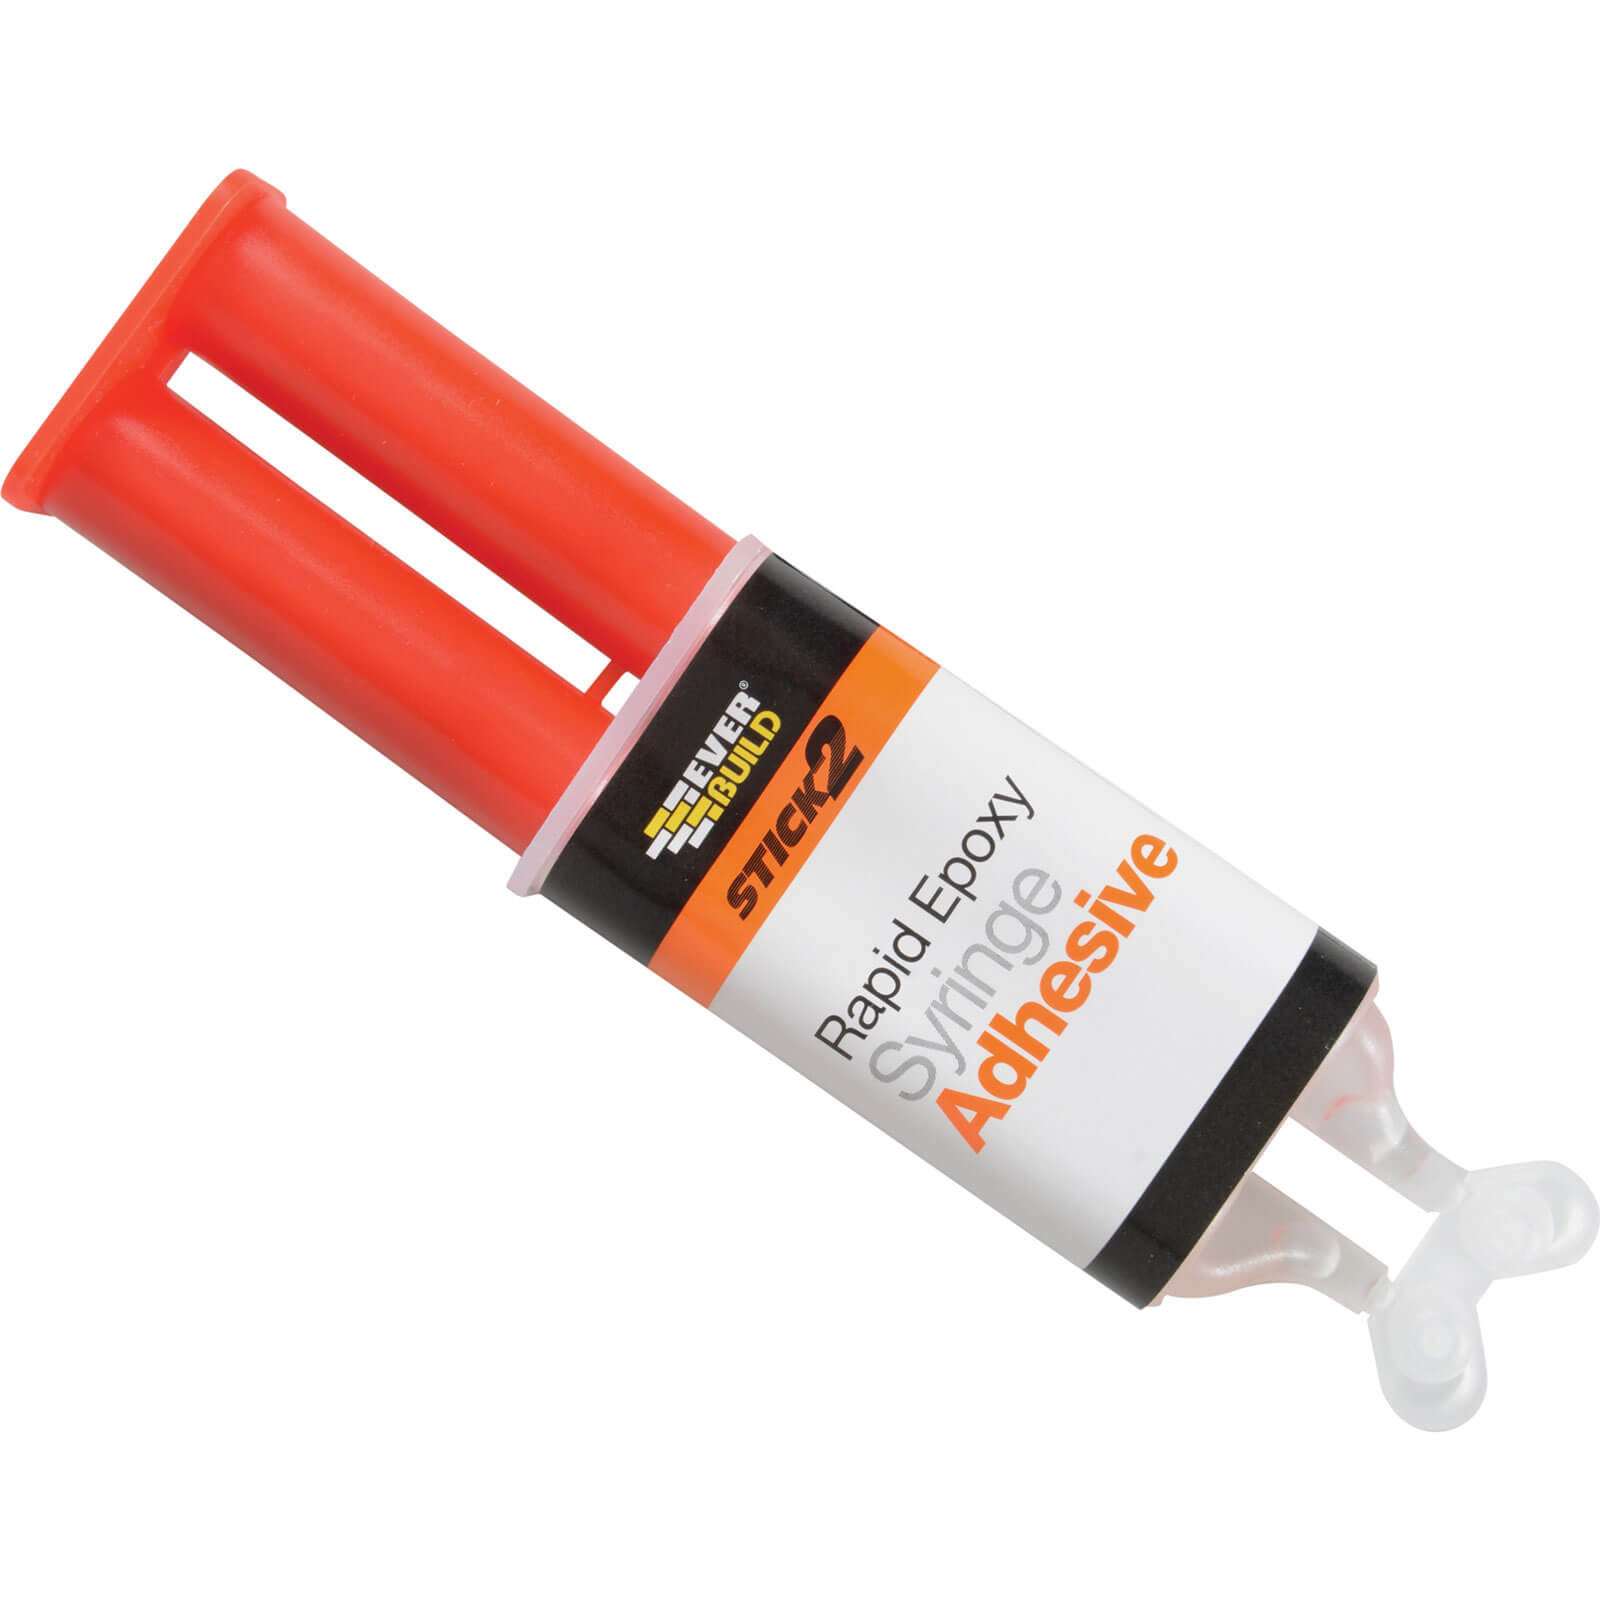 Image of Everbuild Stick 2 Rapid Epoxy Syringe